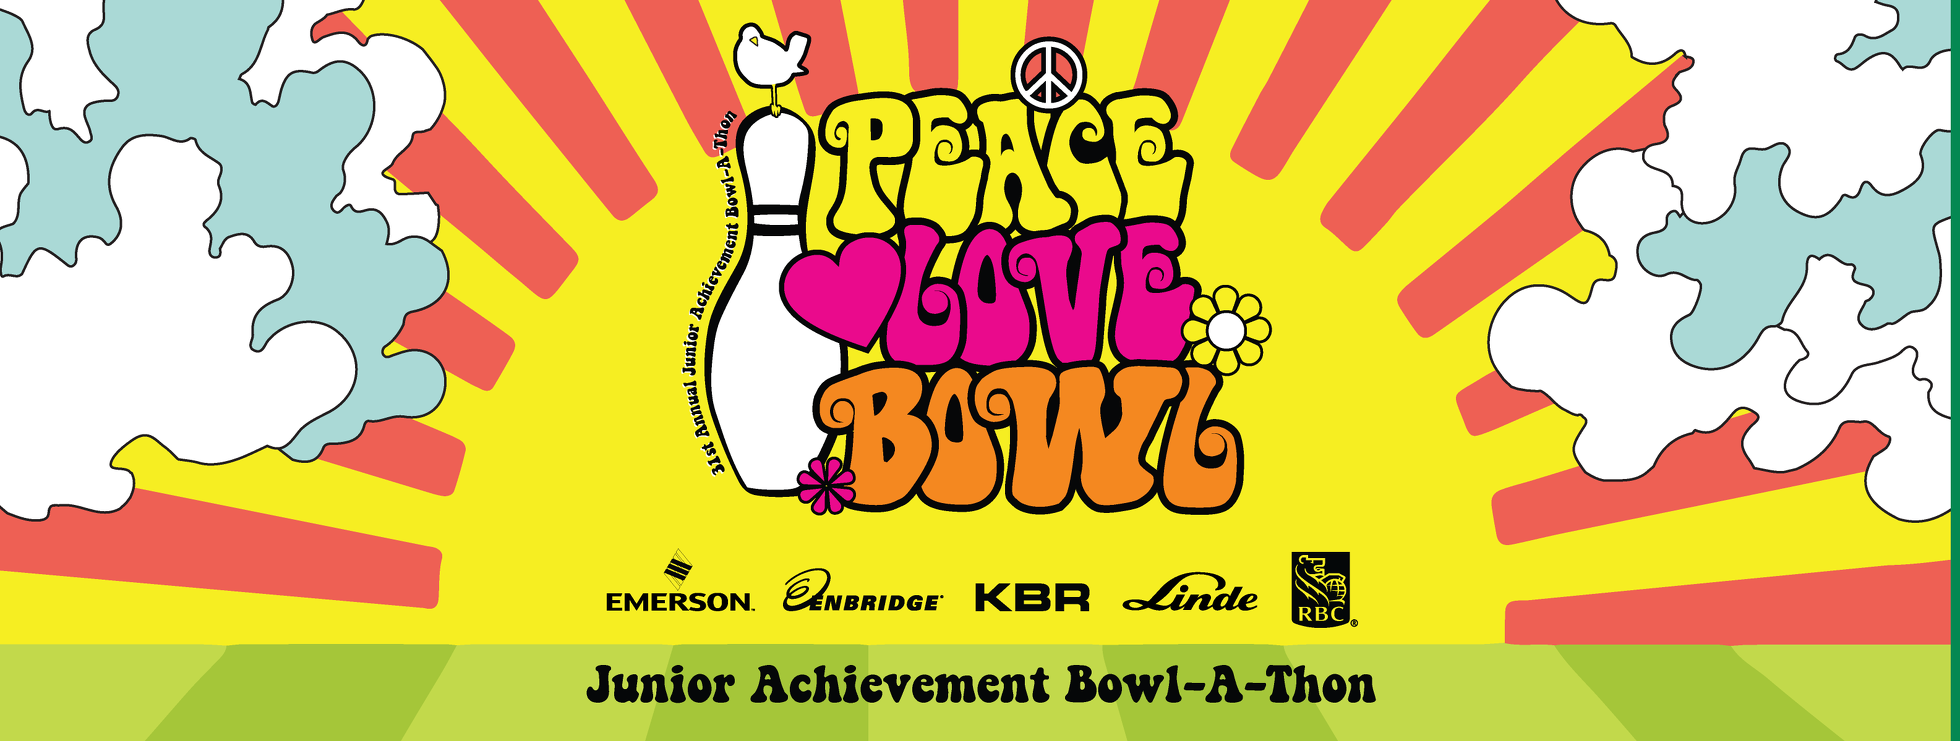 Junior Achievement Bowl-A-Thon